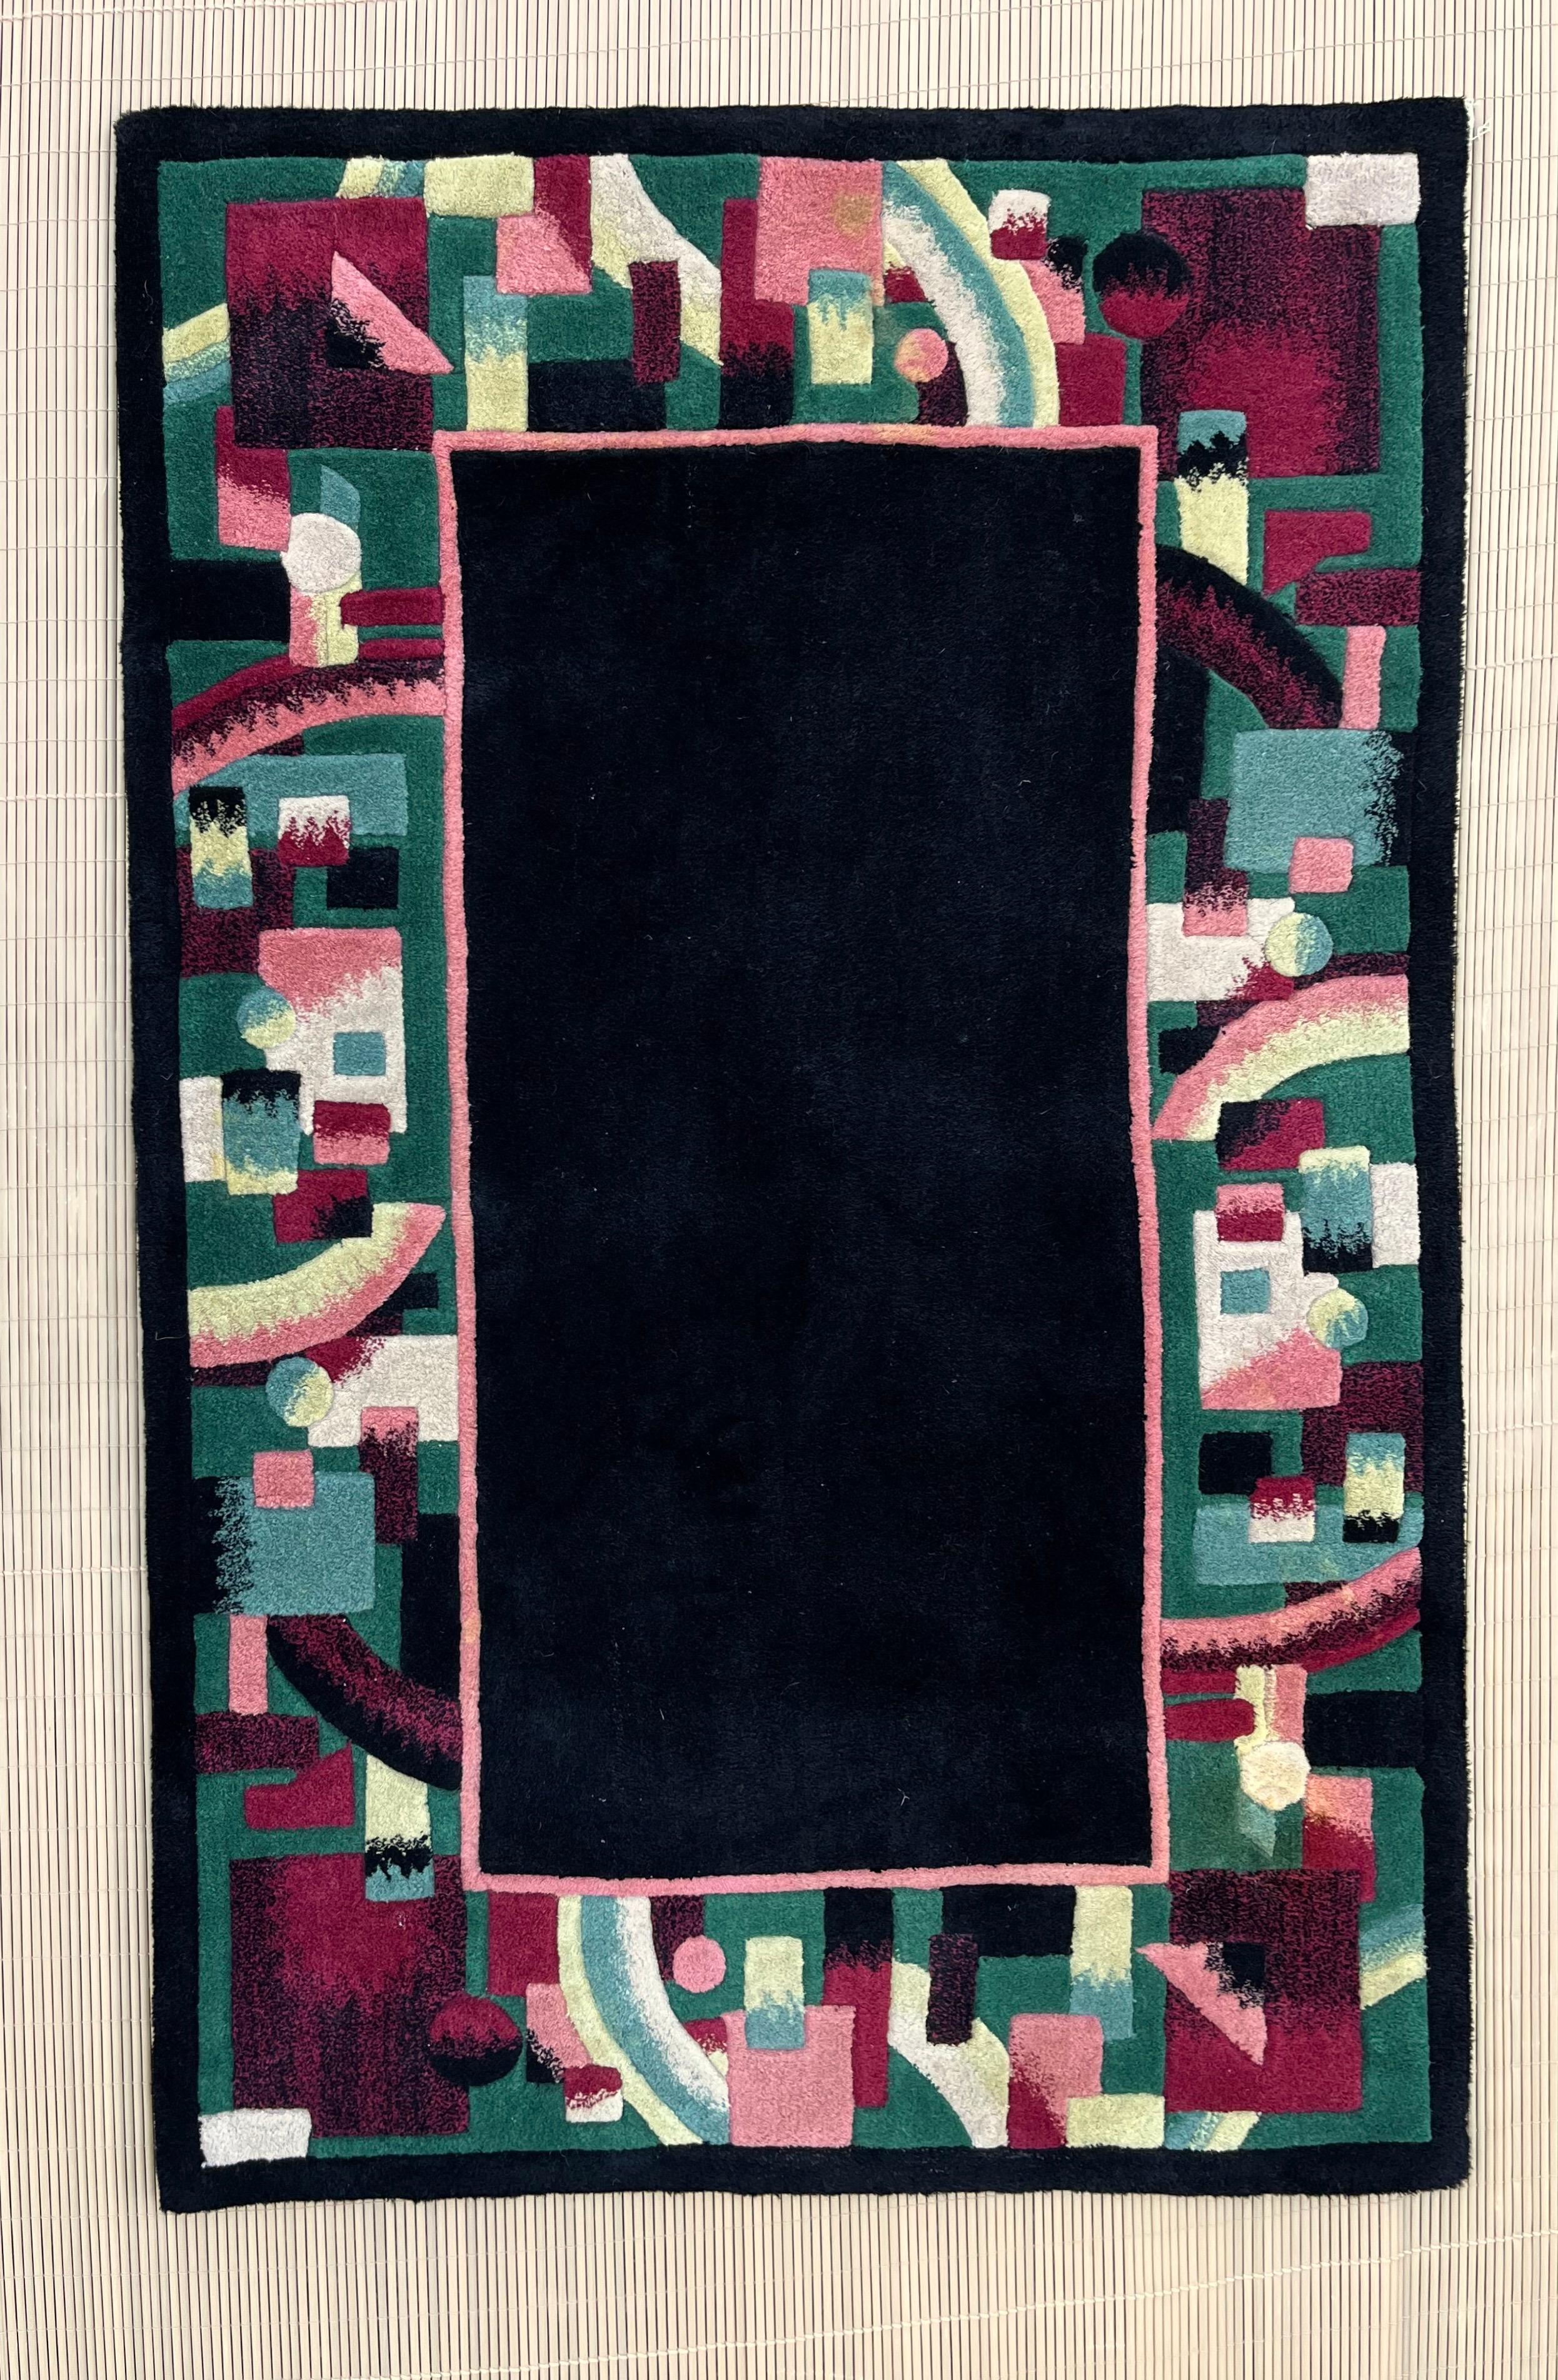 Vintage Postmodern Geometrischer Flächenteppich. Circa 1980er Jahre
Ein abstraktes Muster auf getufteter Wolle in dunklen Grün-, Magenta- und Cremetönen um ein schwarzes Zentrum.
In ausgezeichnetem Originalzustand mit kleinen Gebrauchsspuren. Bitte